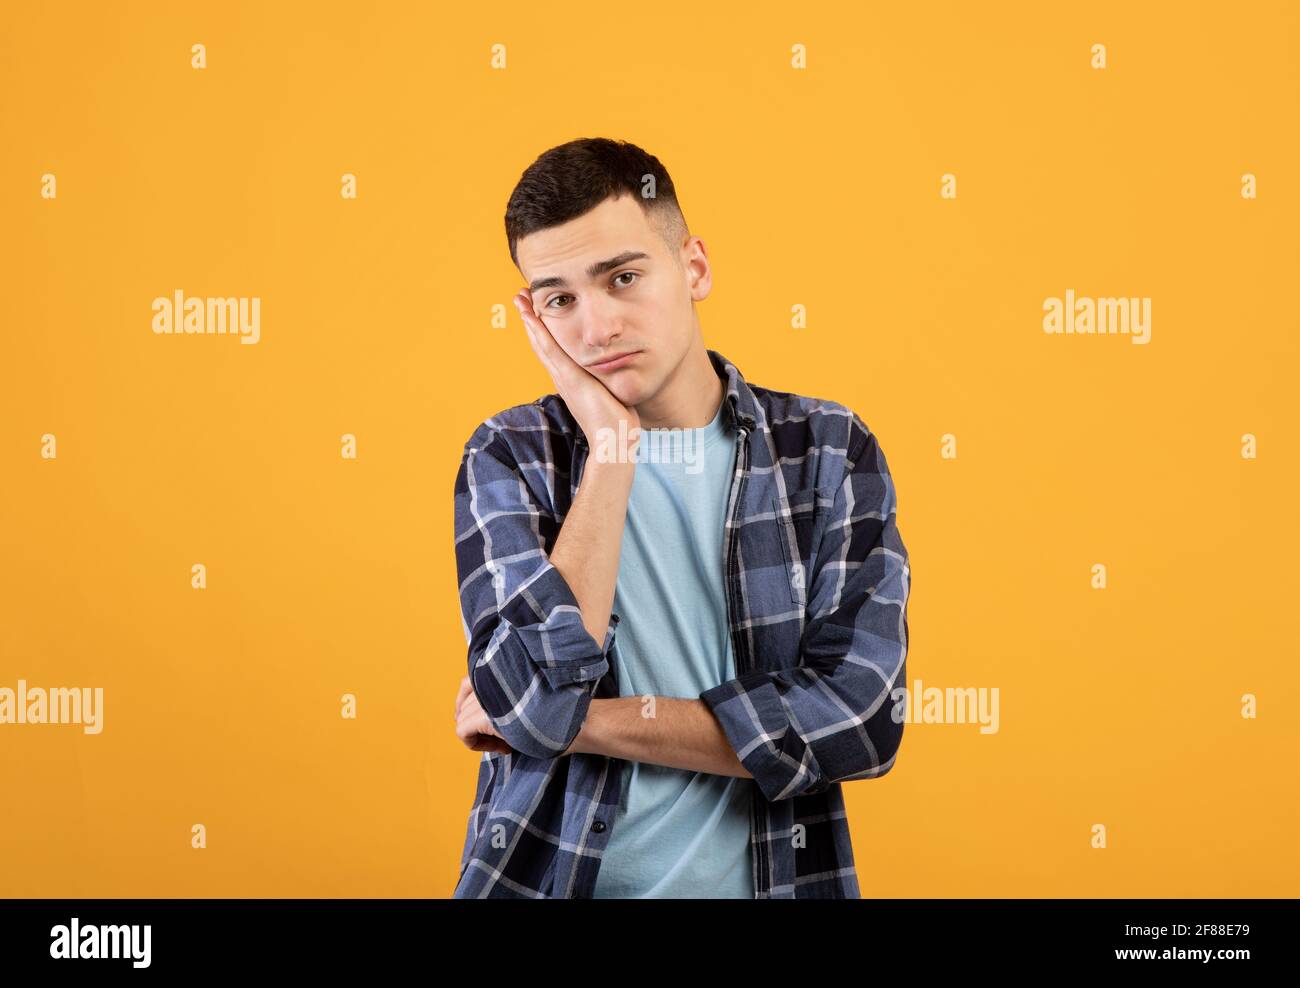 Porträt eines jungen Mannes, der sich gelangweilt fühlt, sich an seiner Hand lehnt und einen langweiligen Tag auf orangefarbenem Studiohintergrund hat Stockfoto